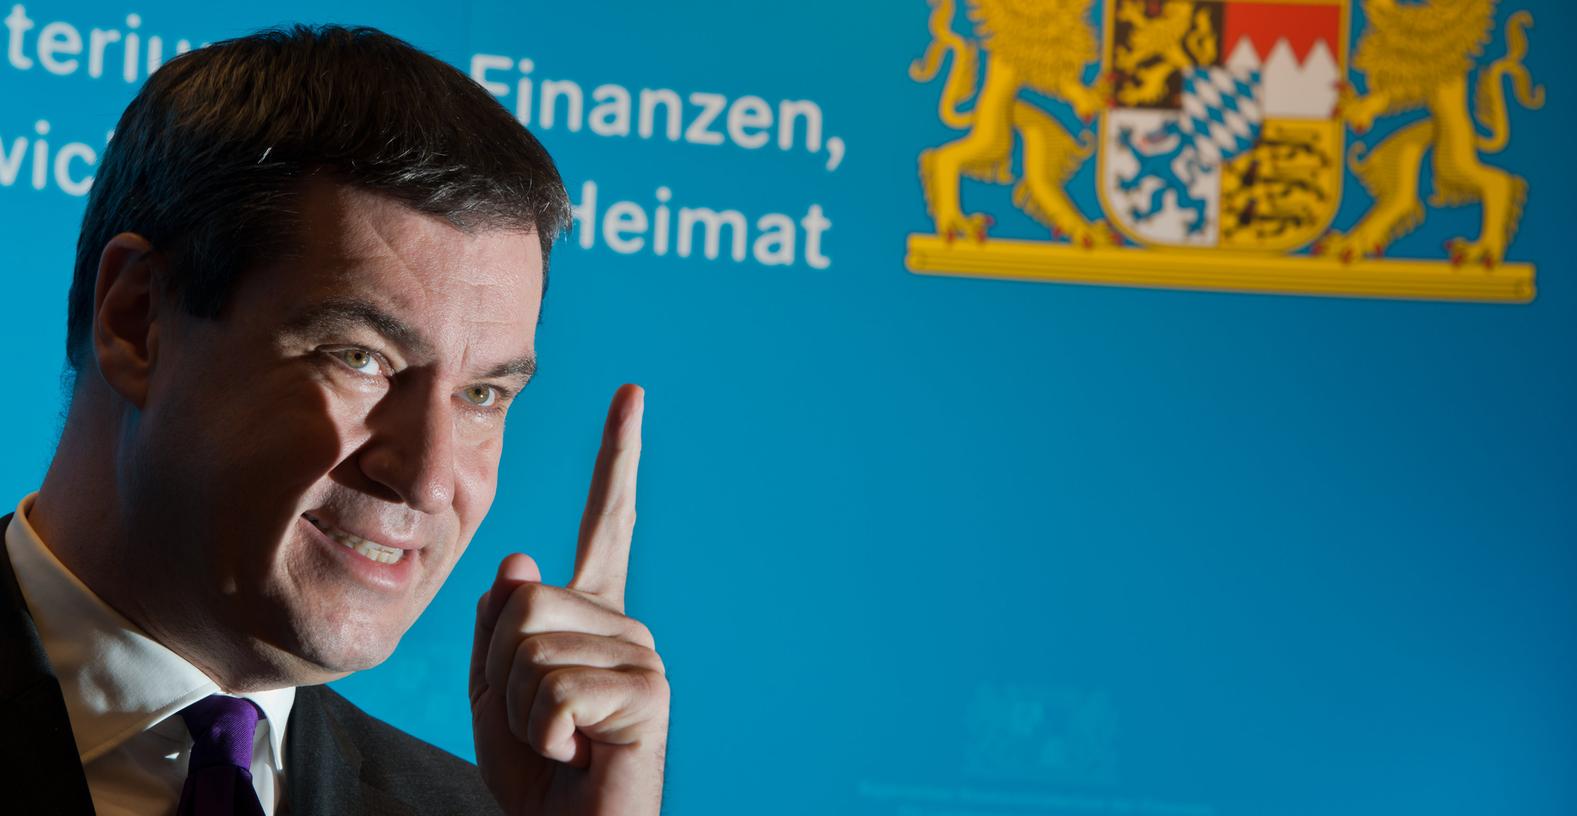 Zum ersten Mal vergab Bayerns Finanz- und Heimatminister Markus Söder den Preis "Heimat Bayern".